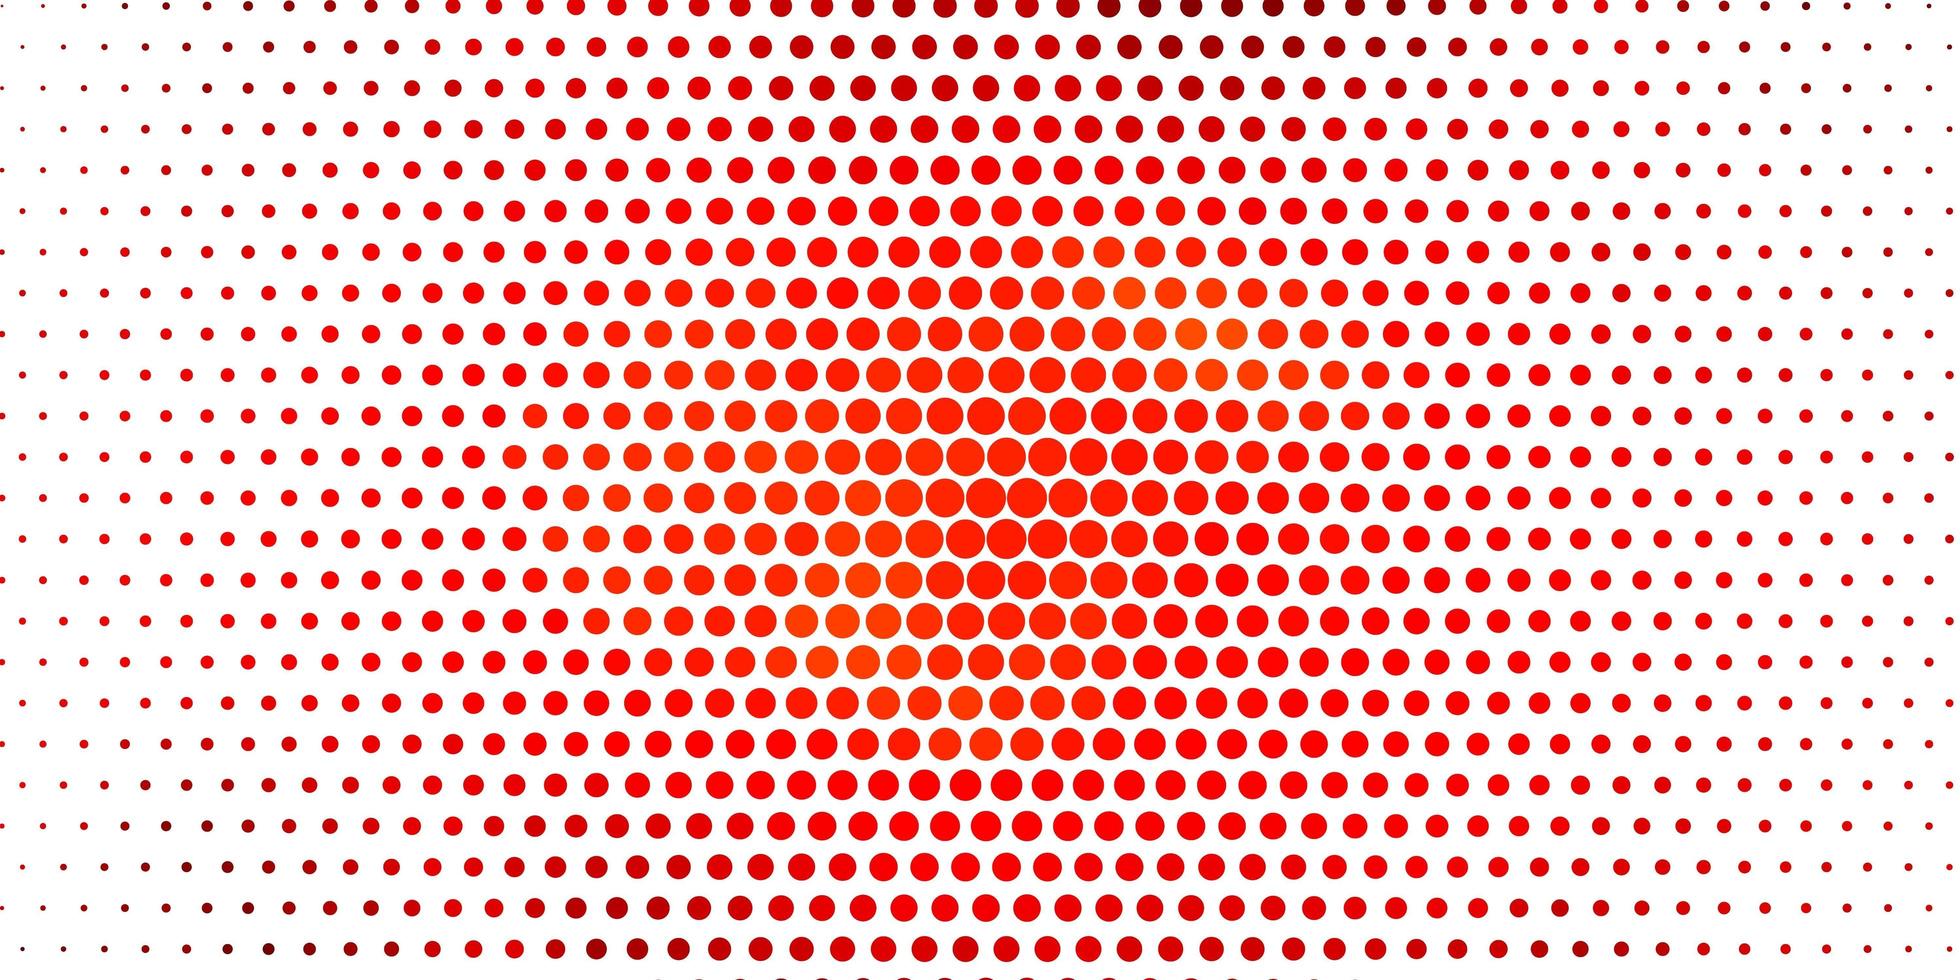 trama vettoriale arancione chiaro con cerchi.